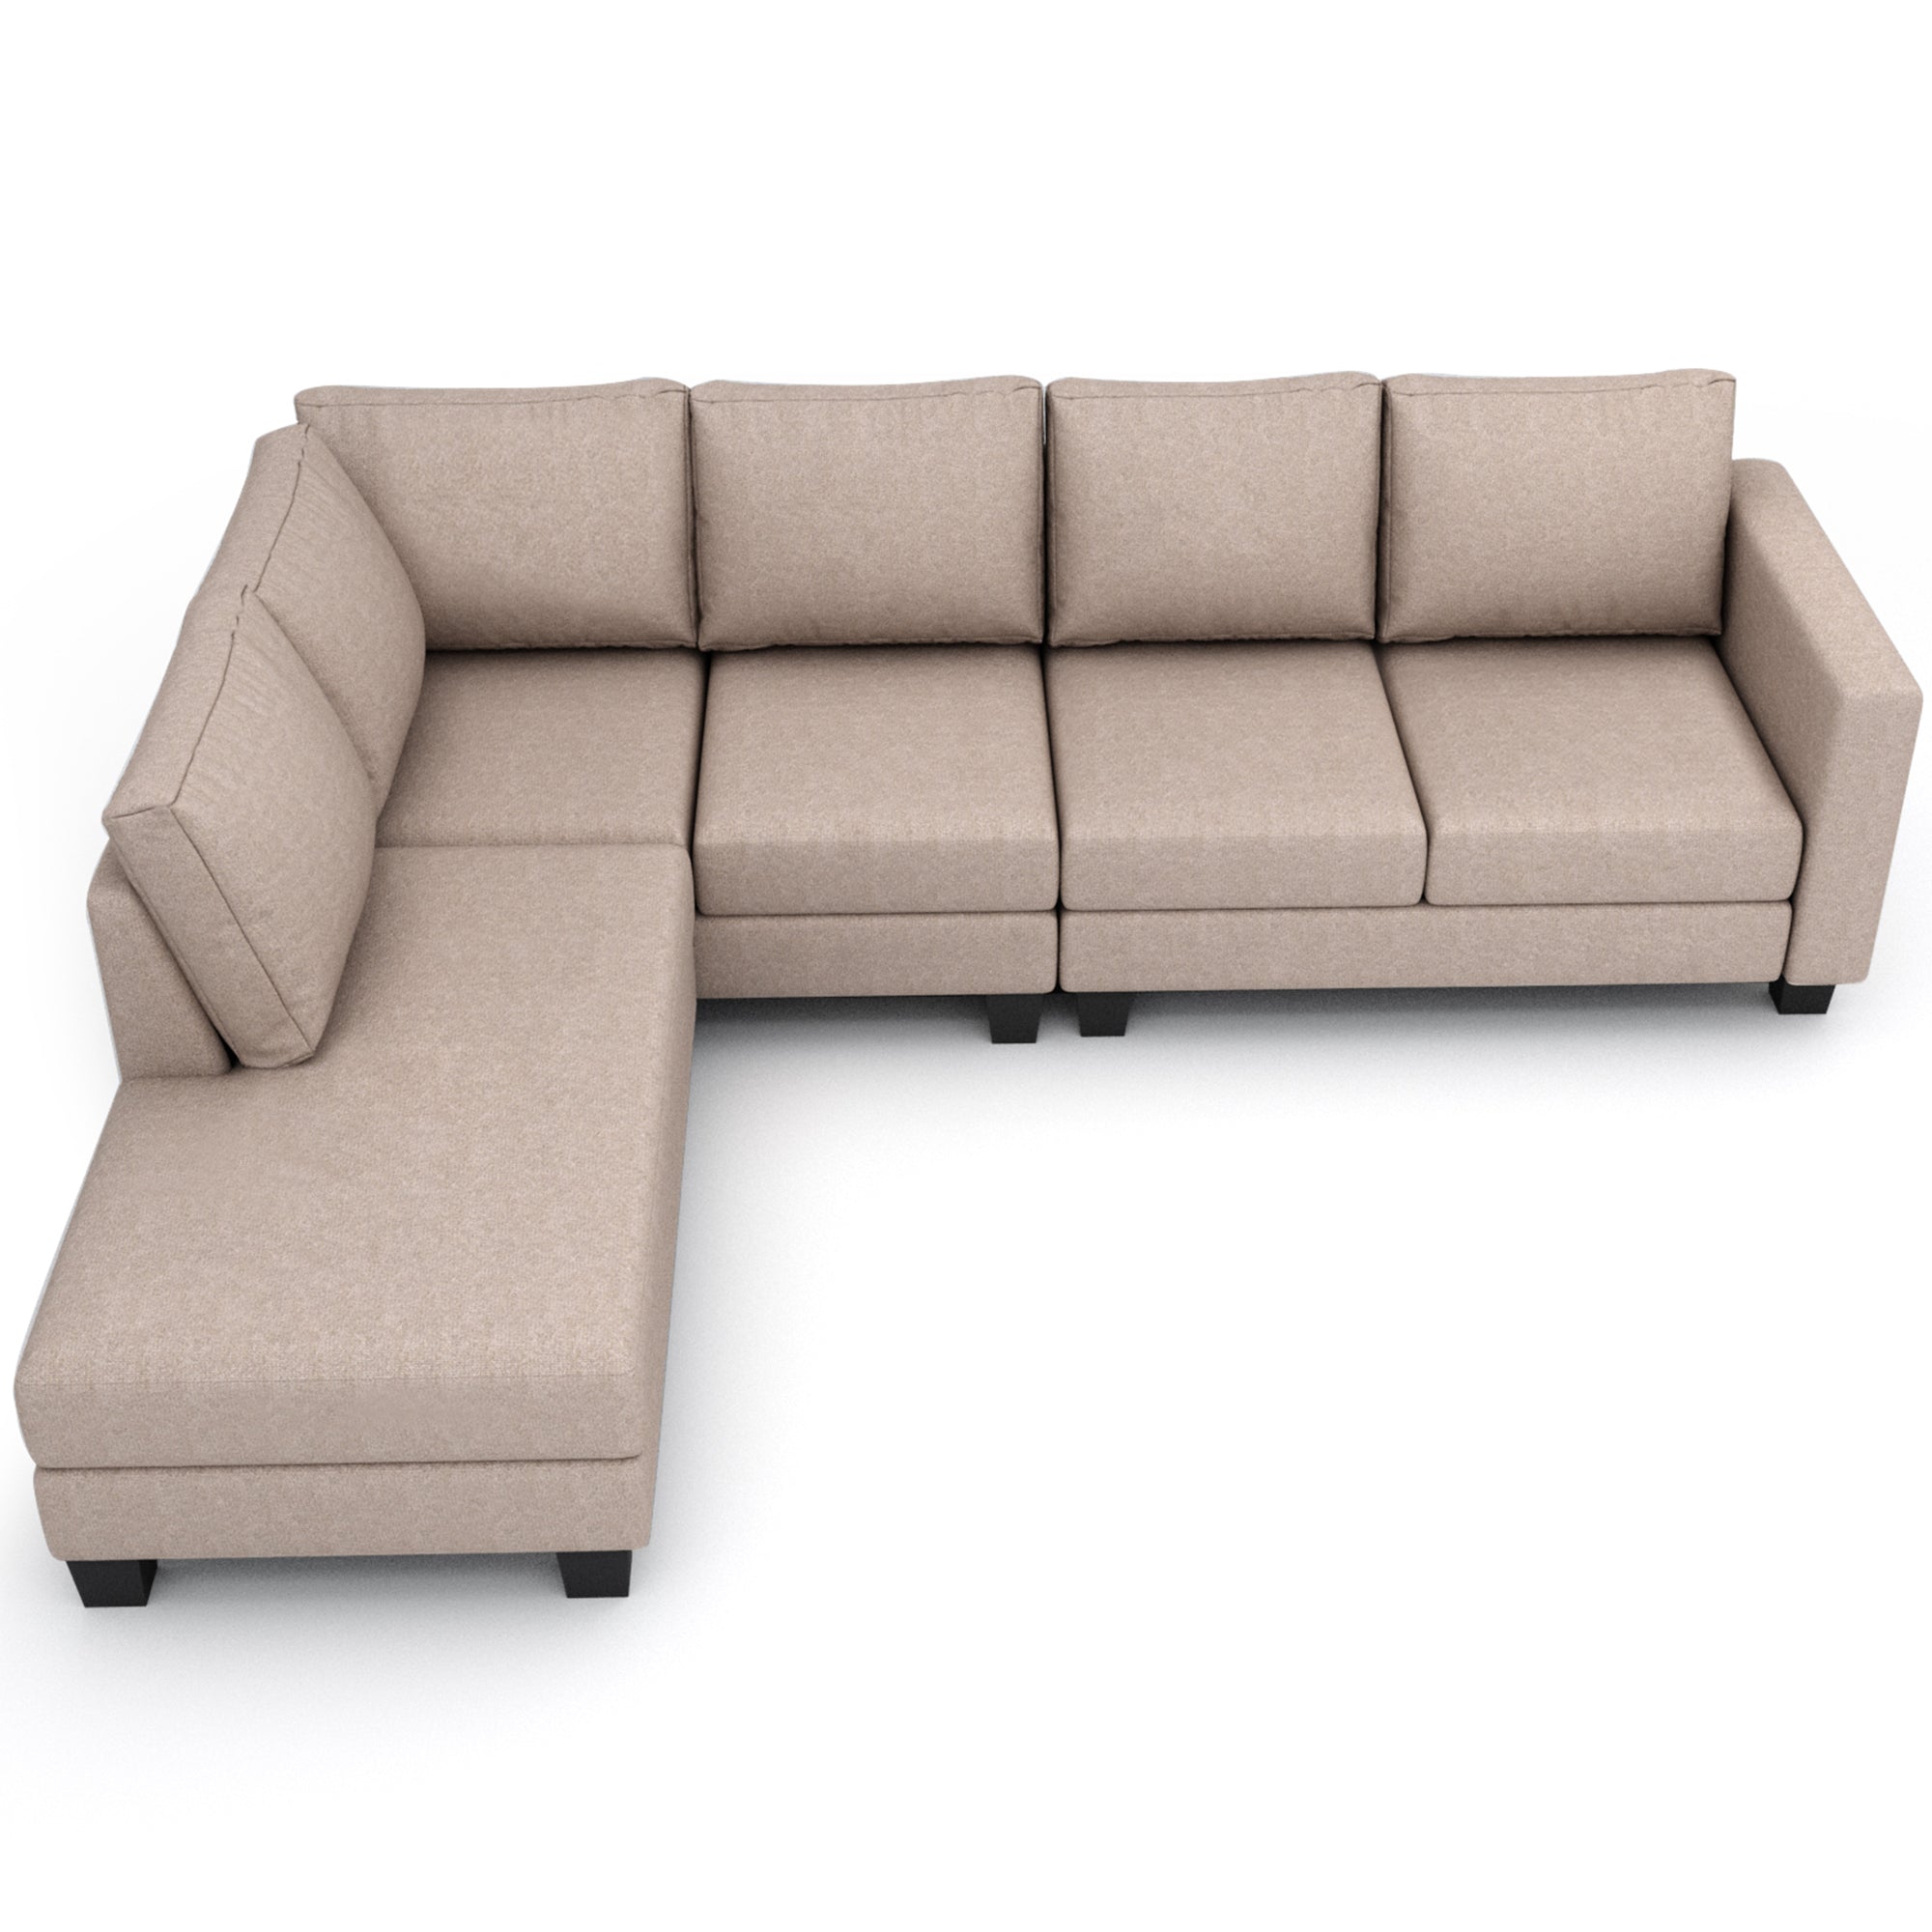 Textured Fabric Sectional Sofa Set